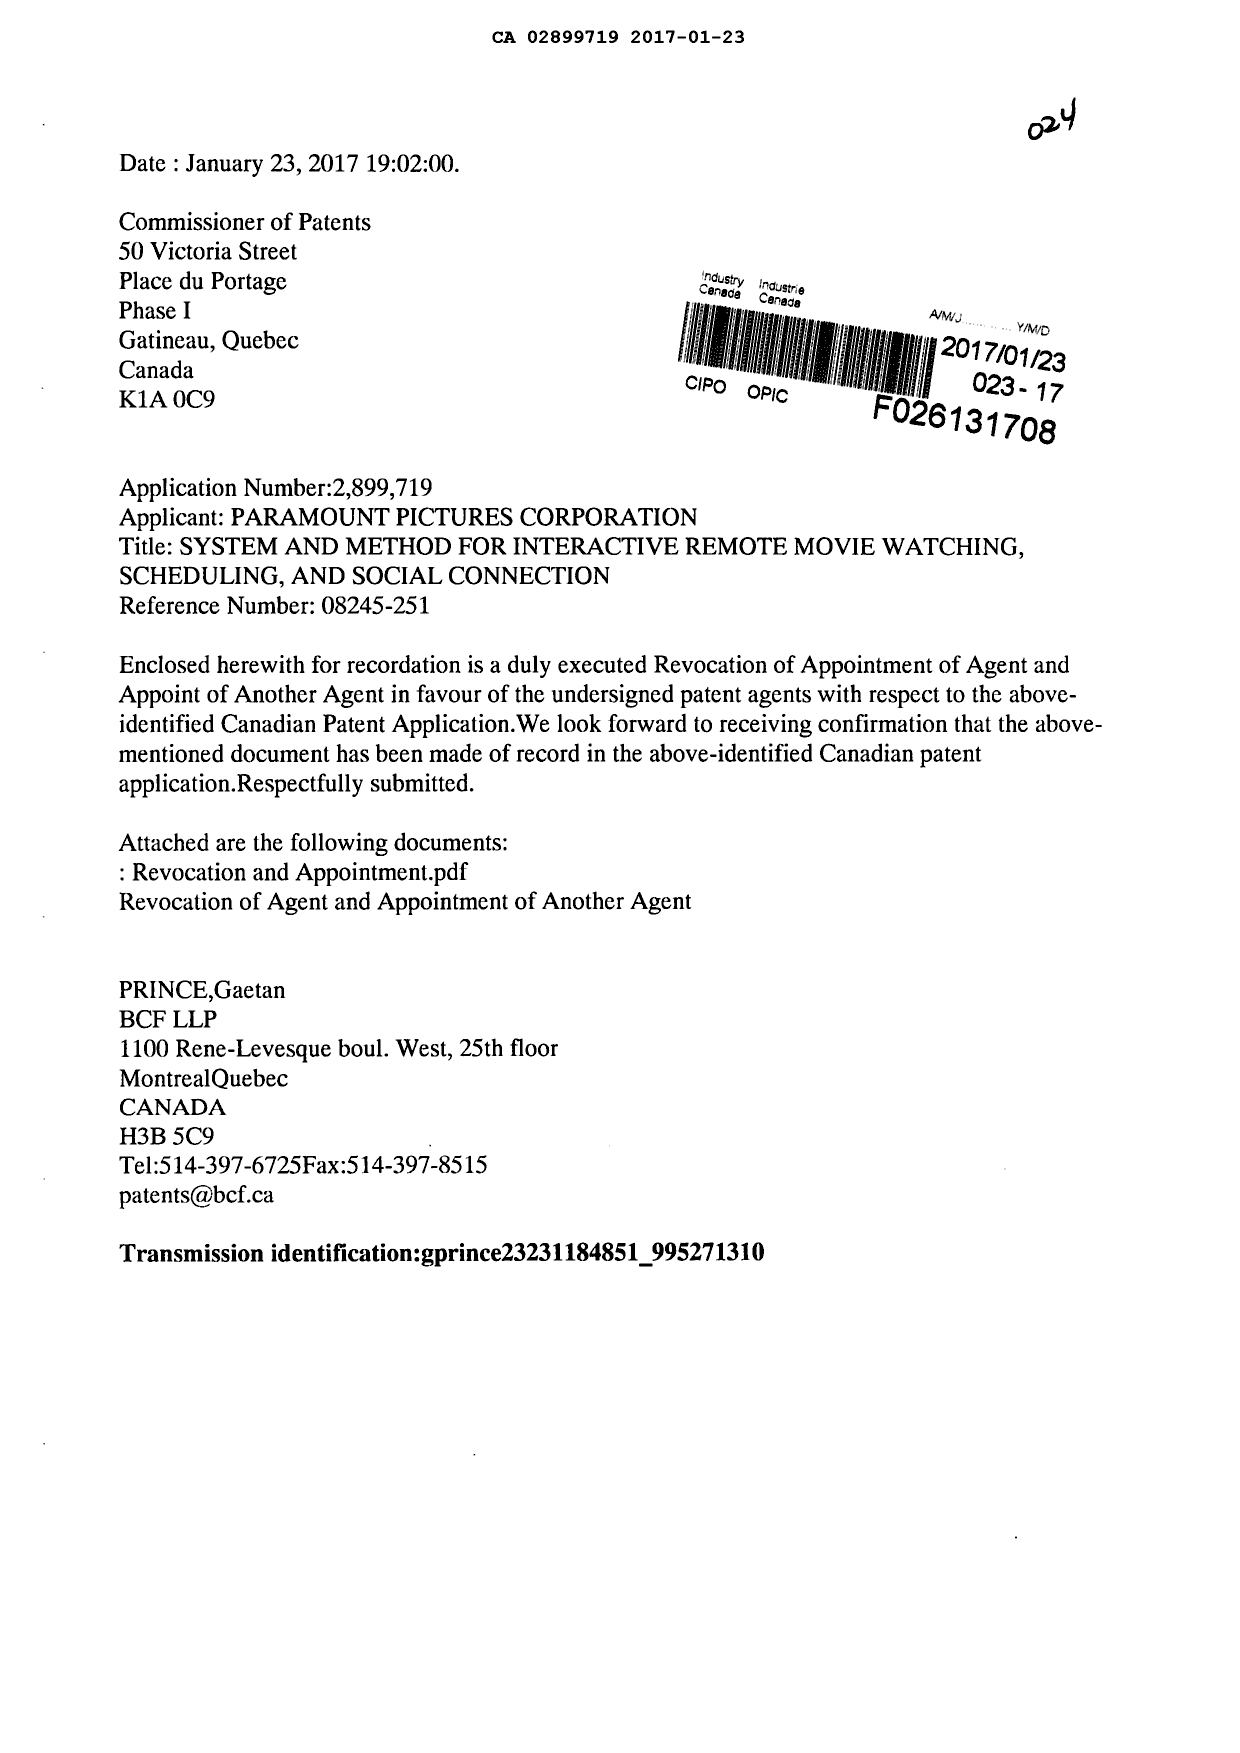 Document de brevet canadien 2899719. Changement de nomination d'agent 20170123. Image 1 de 2